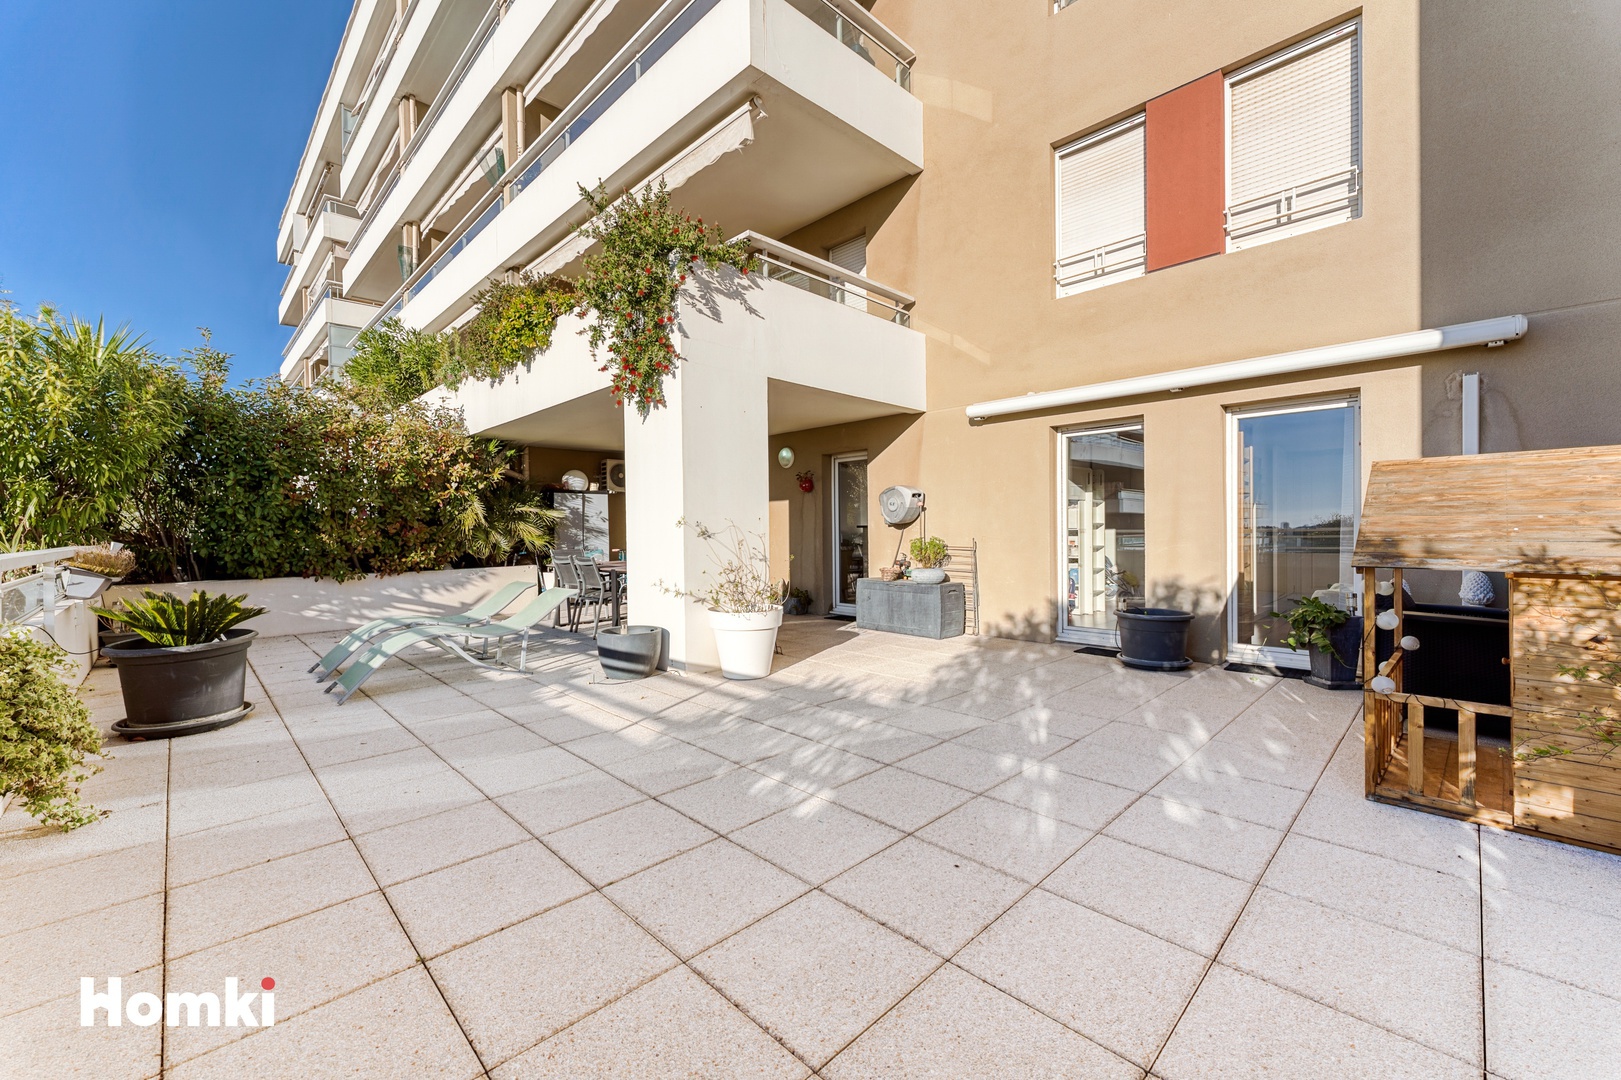 Homki - Vente Appartement  de 62.0 m² à Marseille 13012